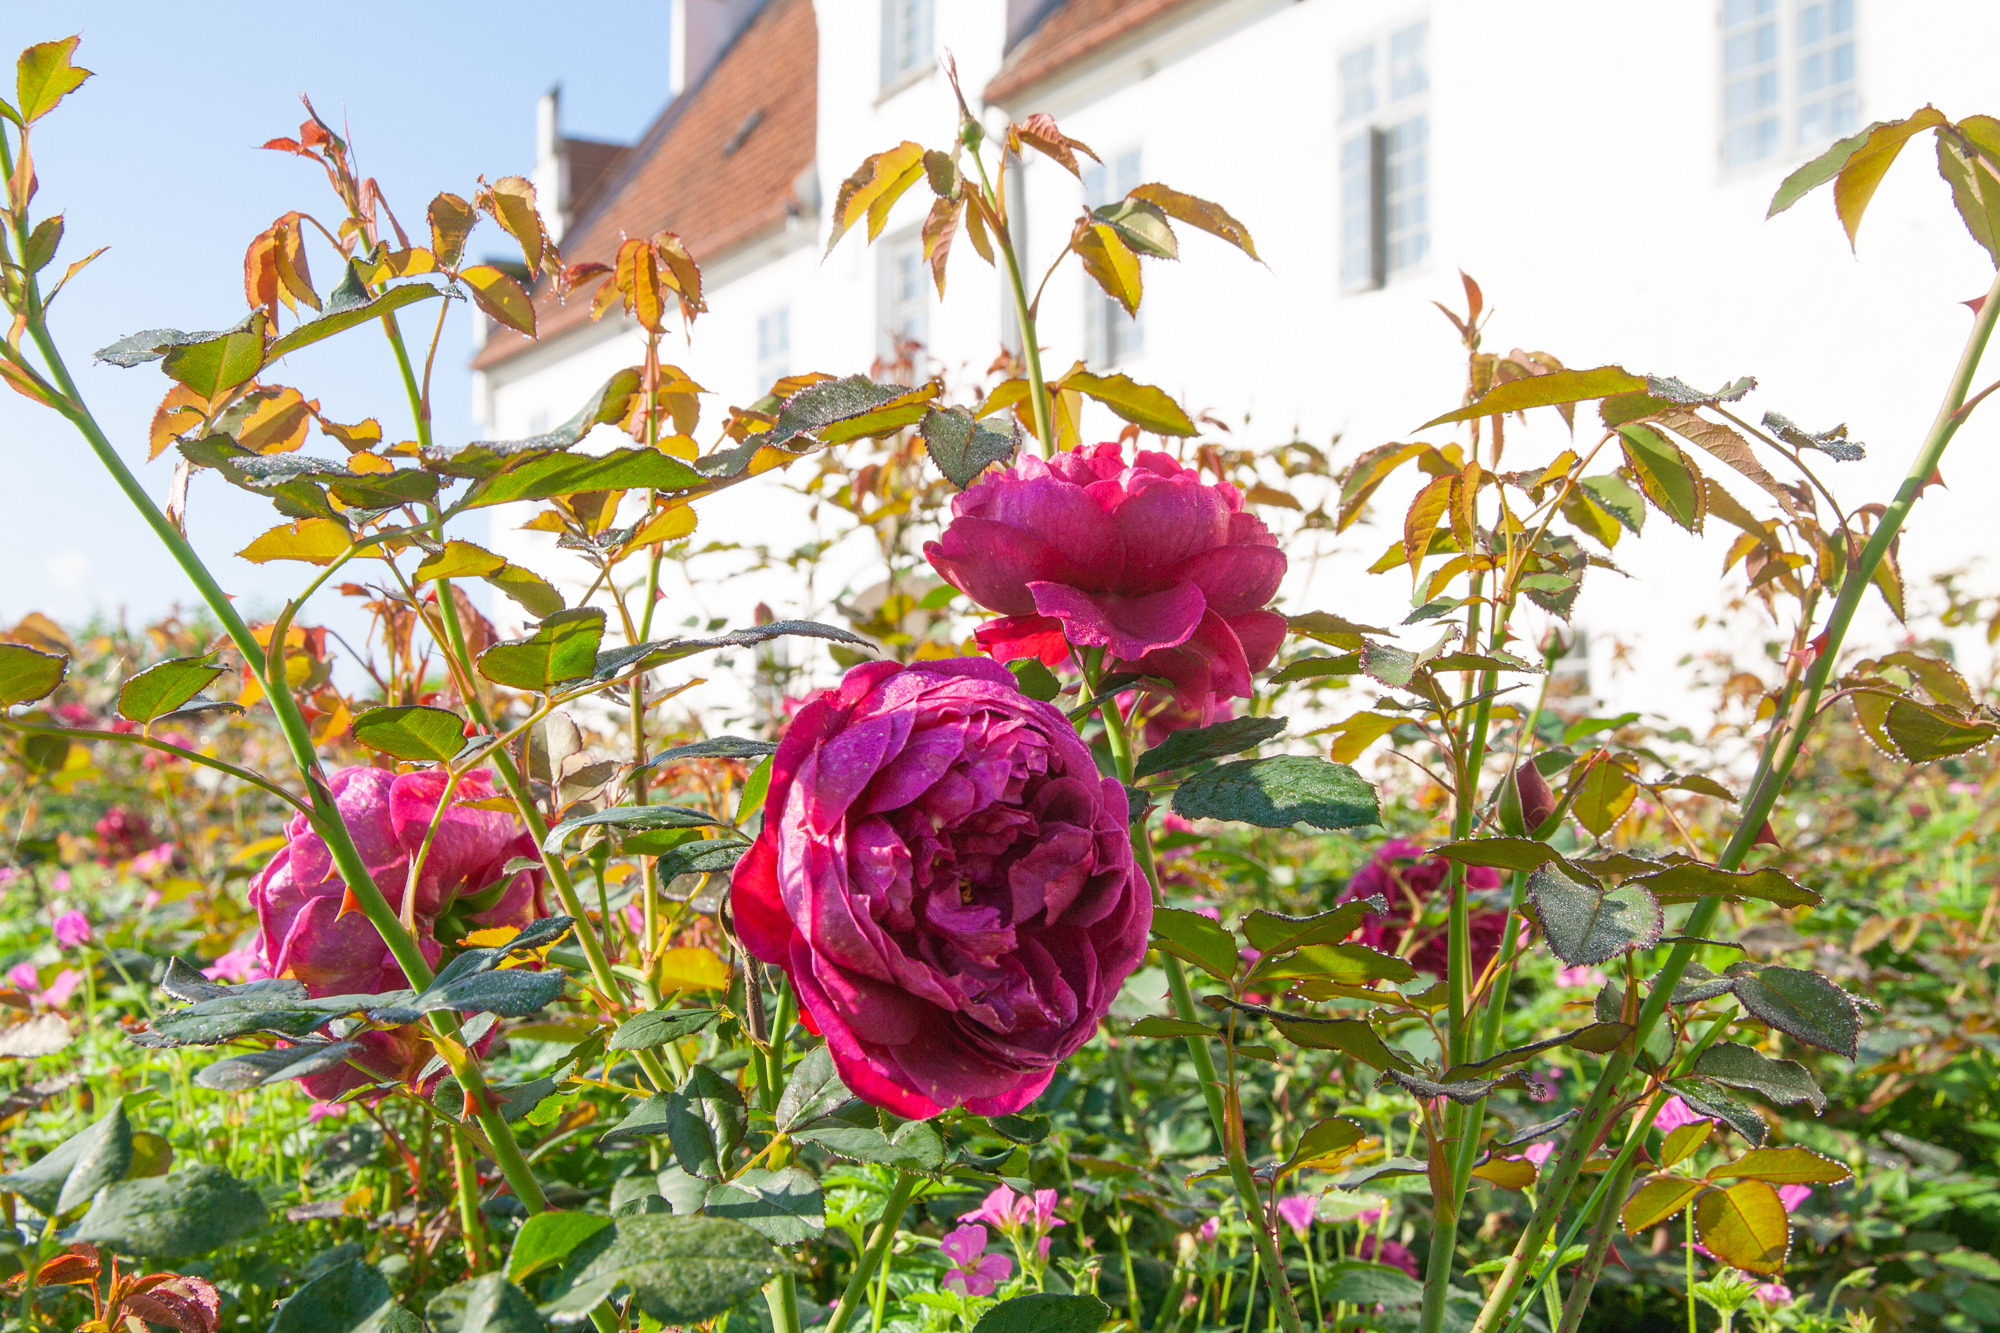  Der Rosengarten bietet eine Auswahl von englischen Austen Rosen und dänischen Old Roses an.  